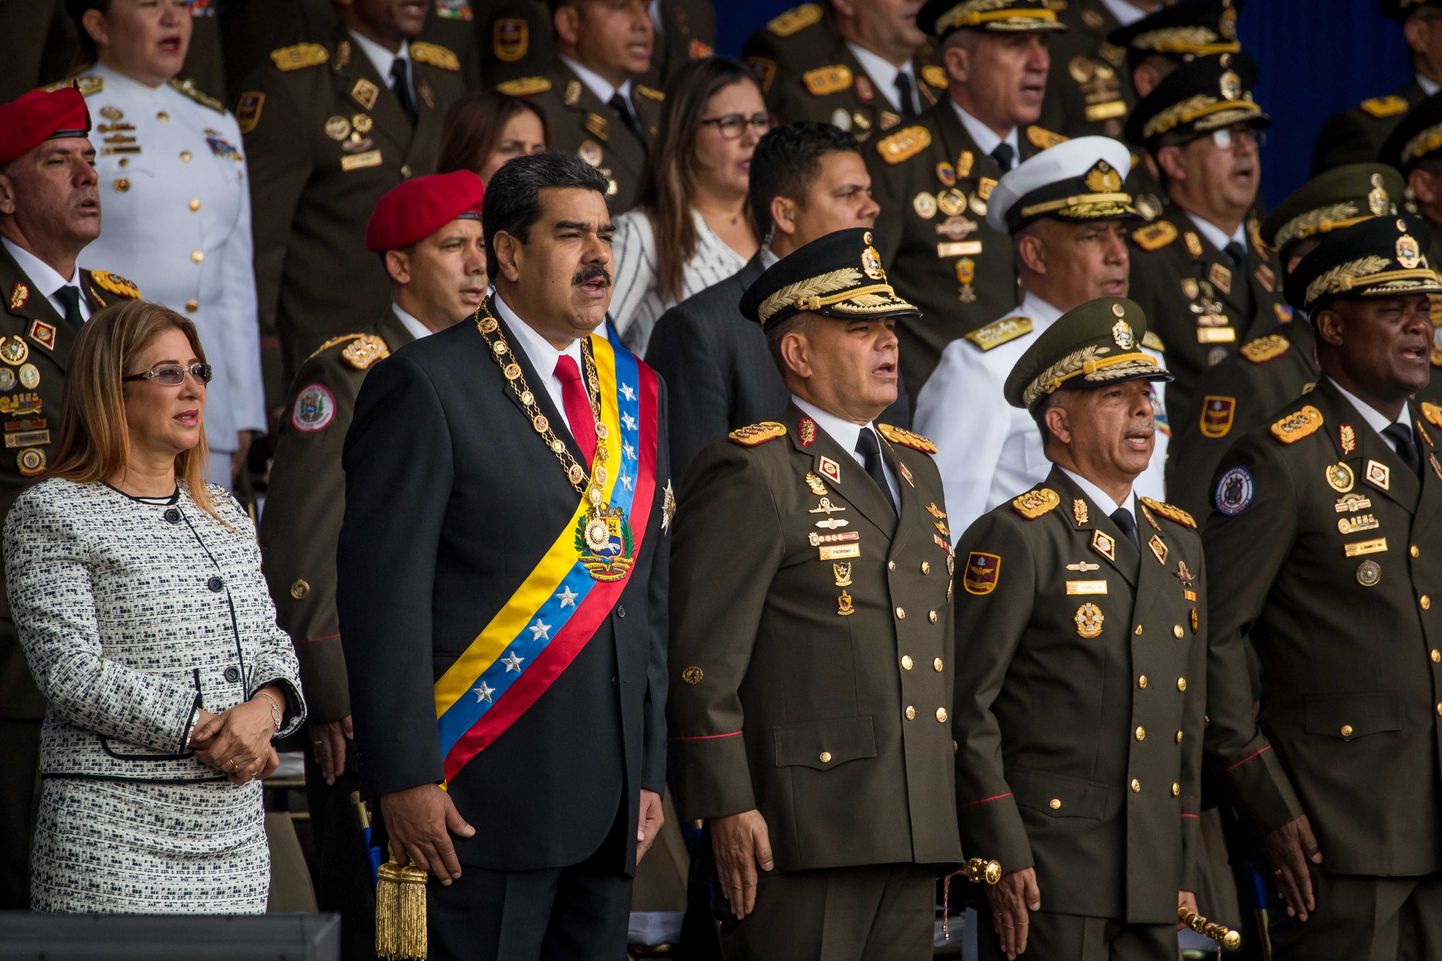 President Nicolas Maduro vahetult enne droonirünnakut.